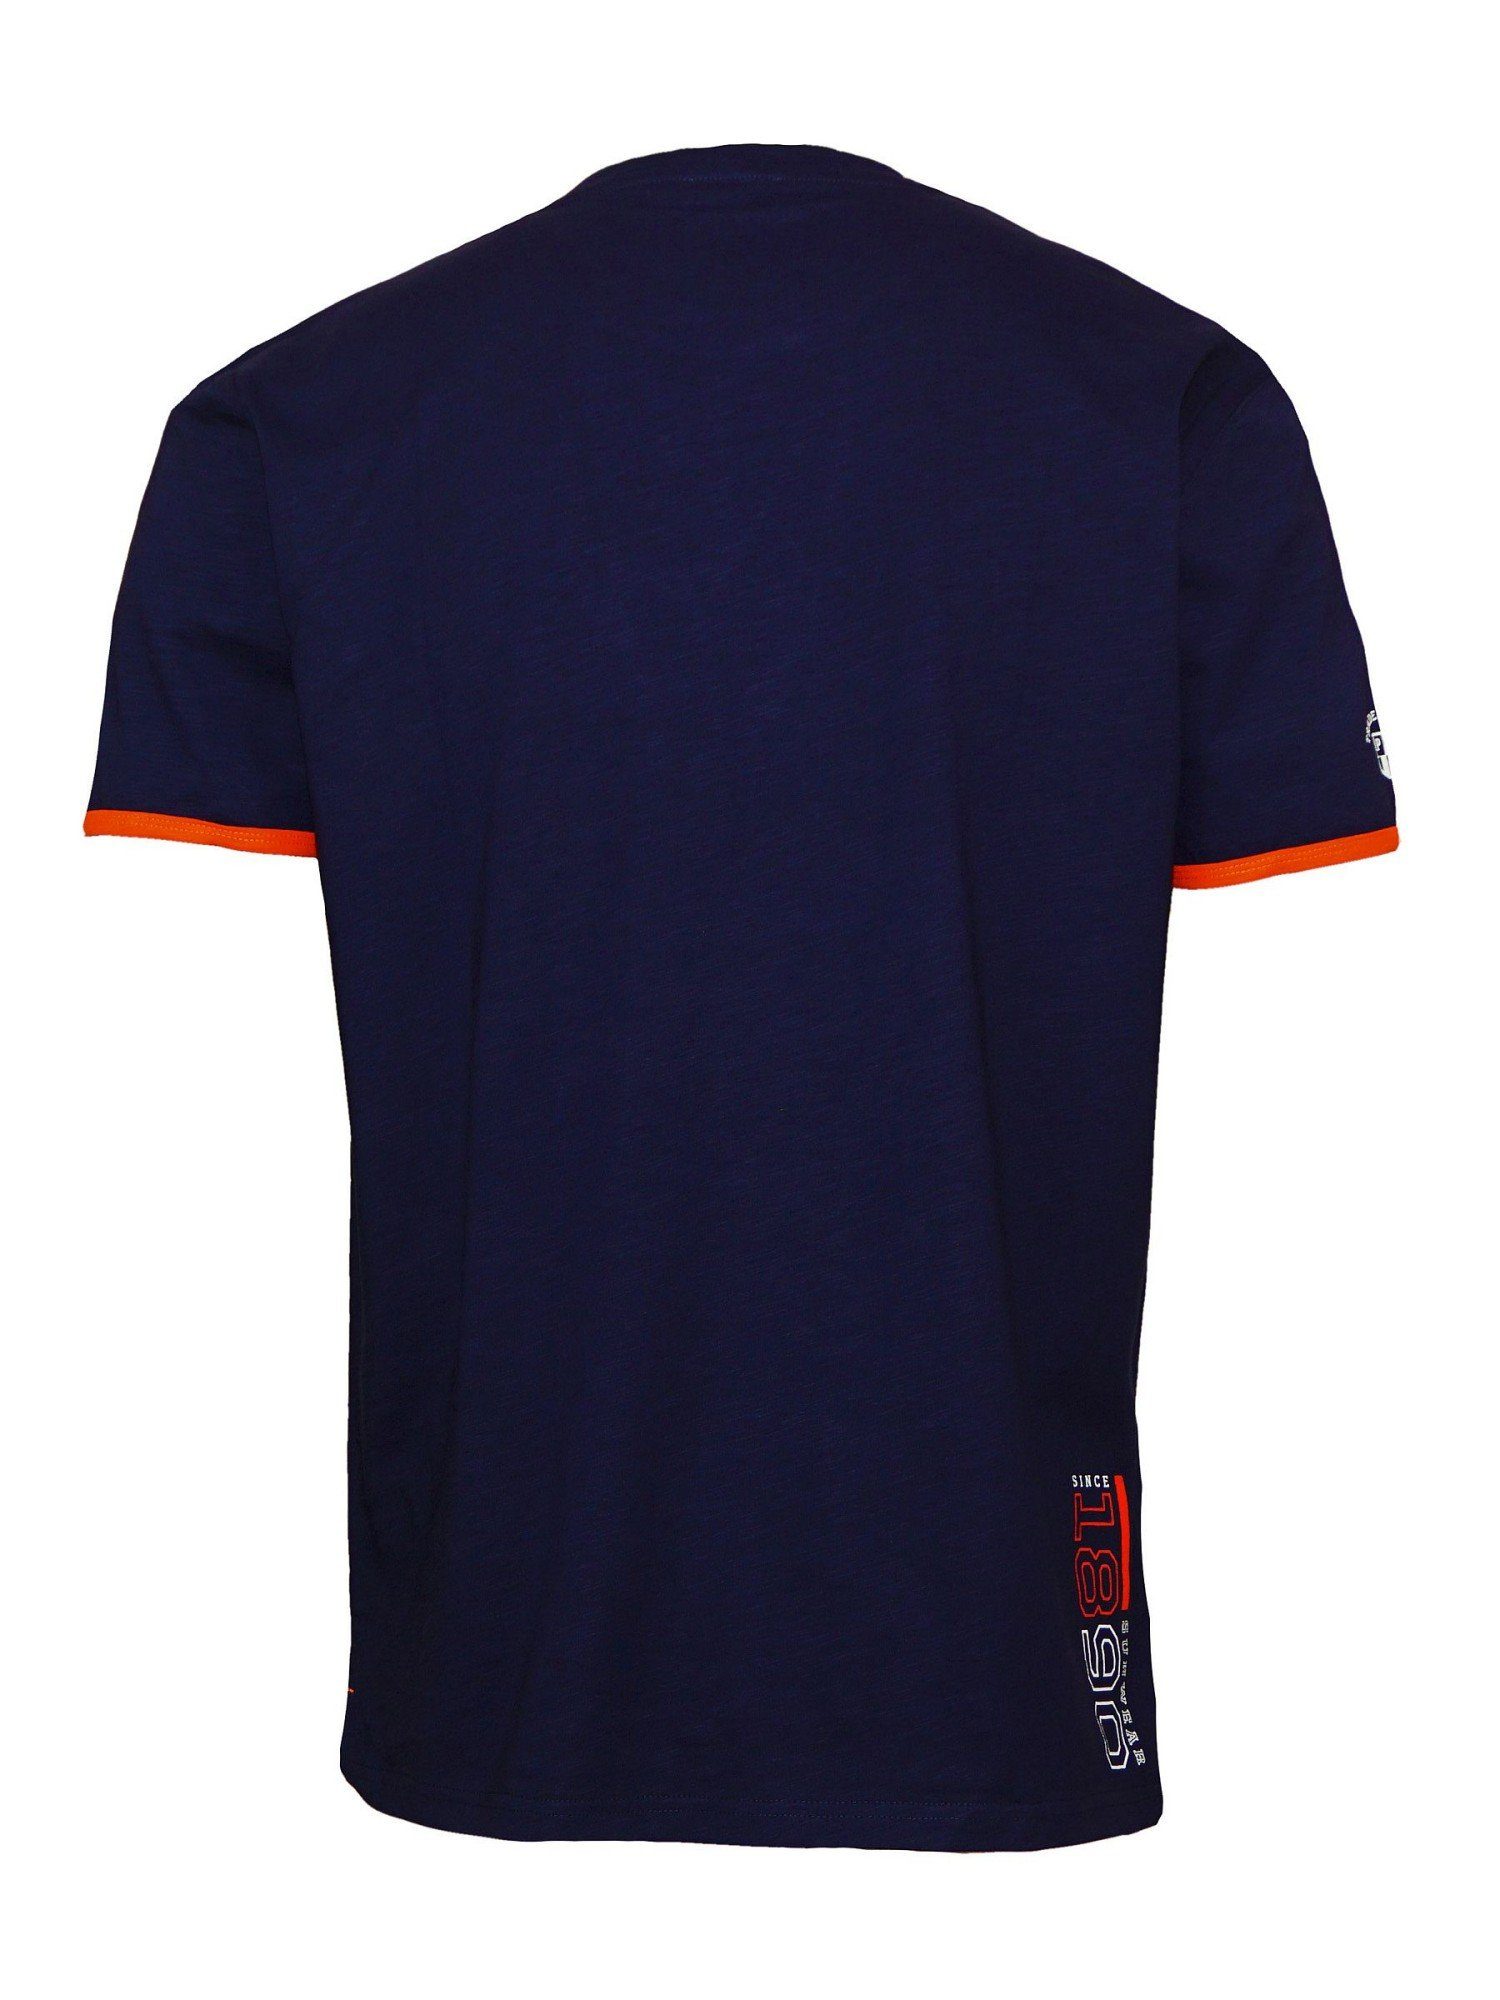 Emer T-Shirt Assn dunkelblau T-Shirt Polo U.S. Shirt